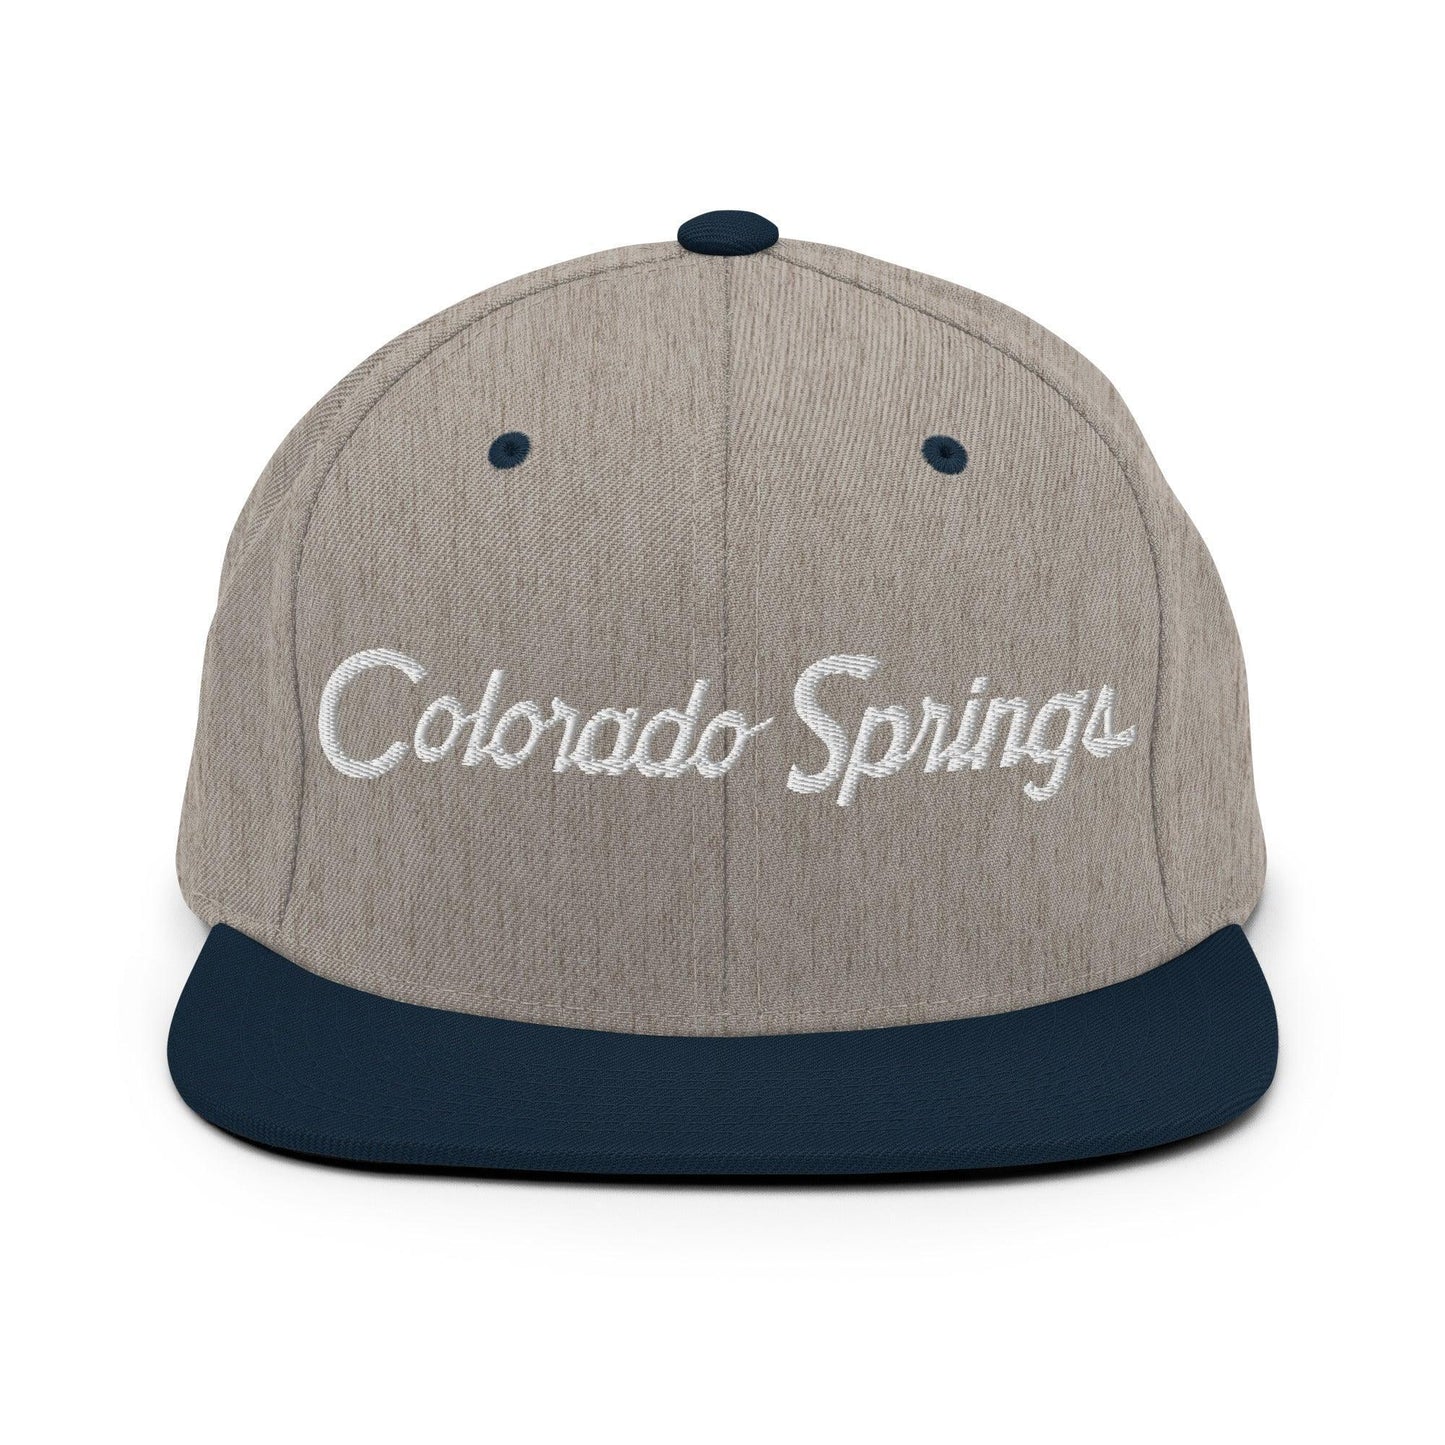 Colorado Springs Script Snapback Hat Heather Grey/ Navy